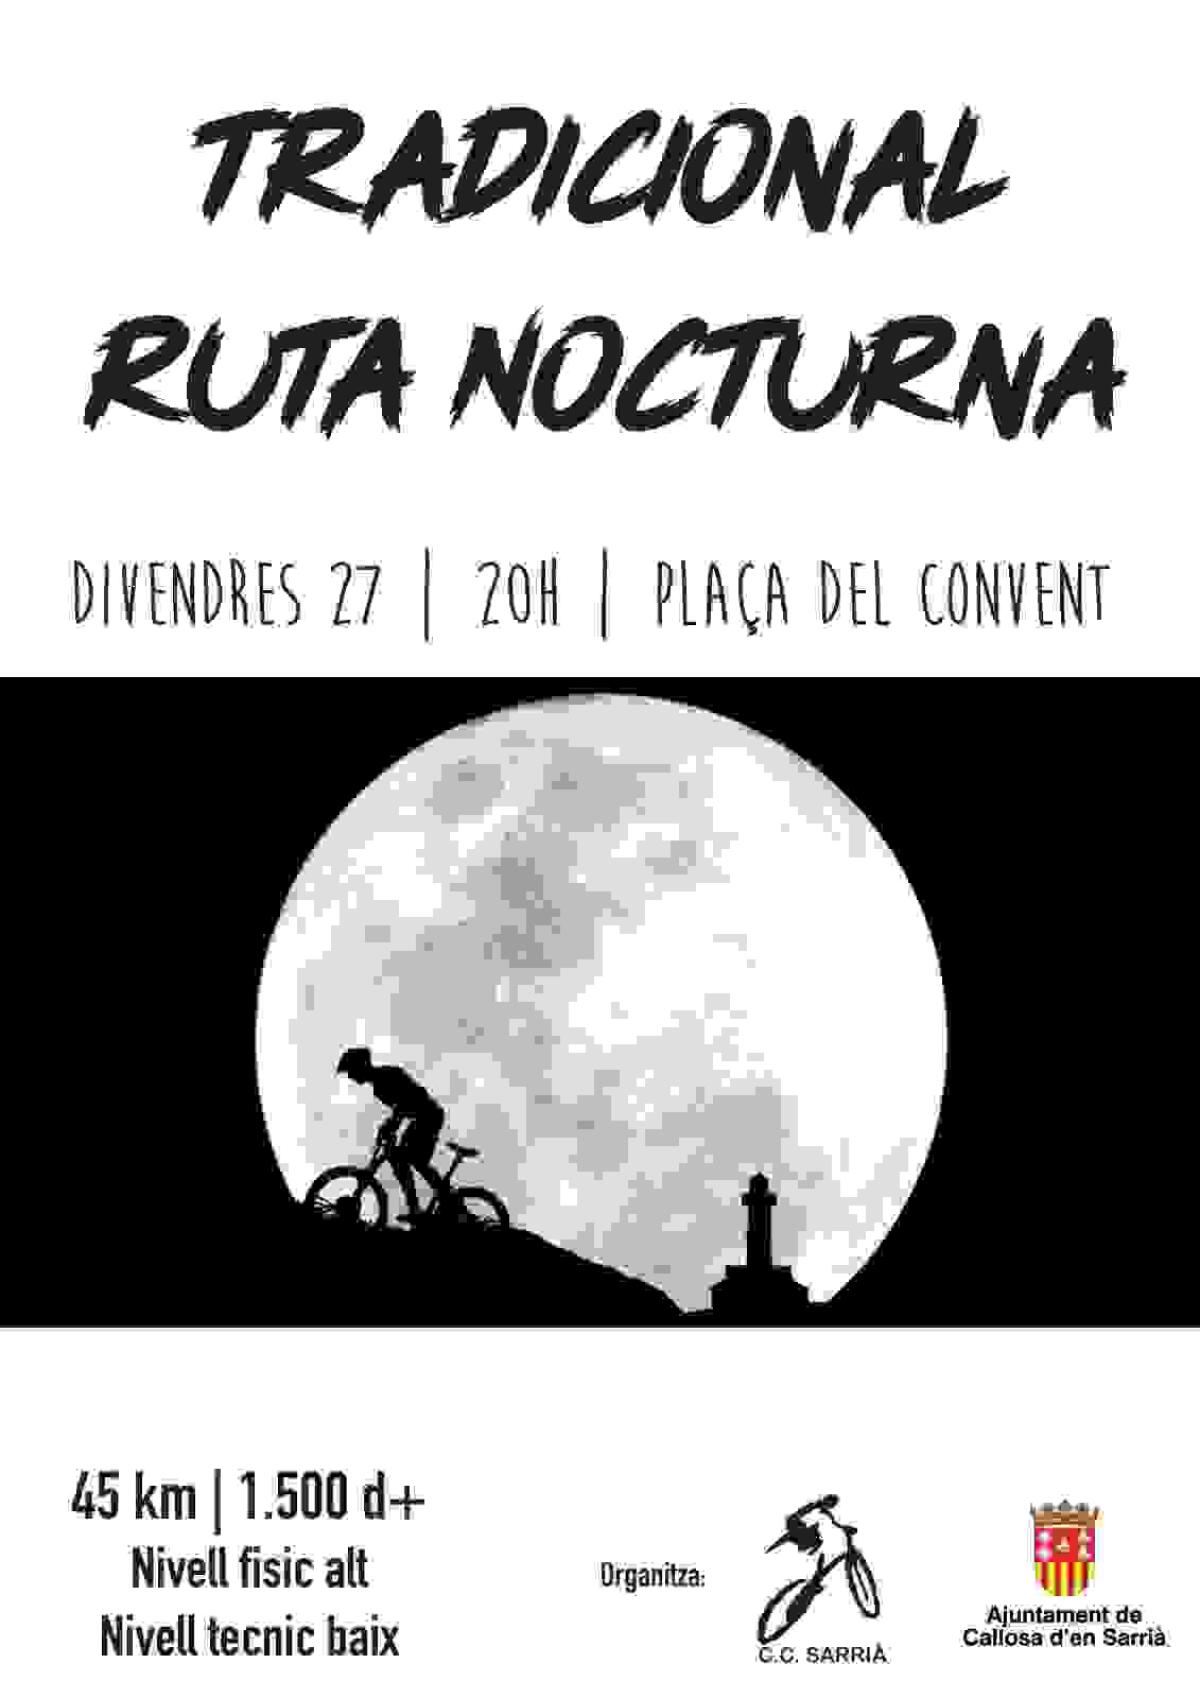 El Club Ciclista Callosa d’en Sarrià organiza la tradicional Ruta Nocturna a la Font dels Teixos y Morro Blau